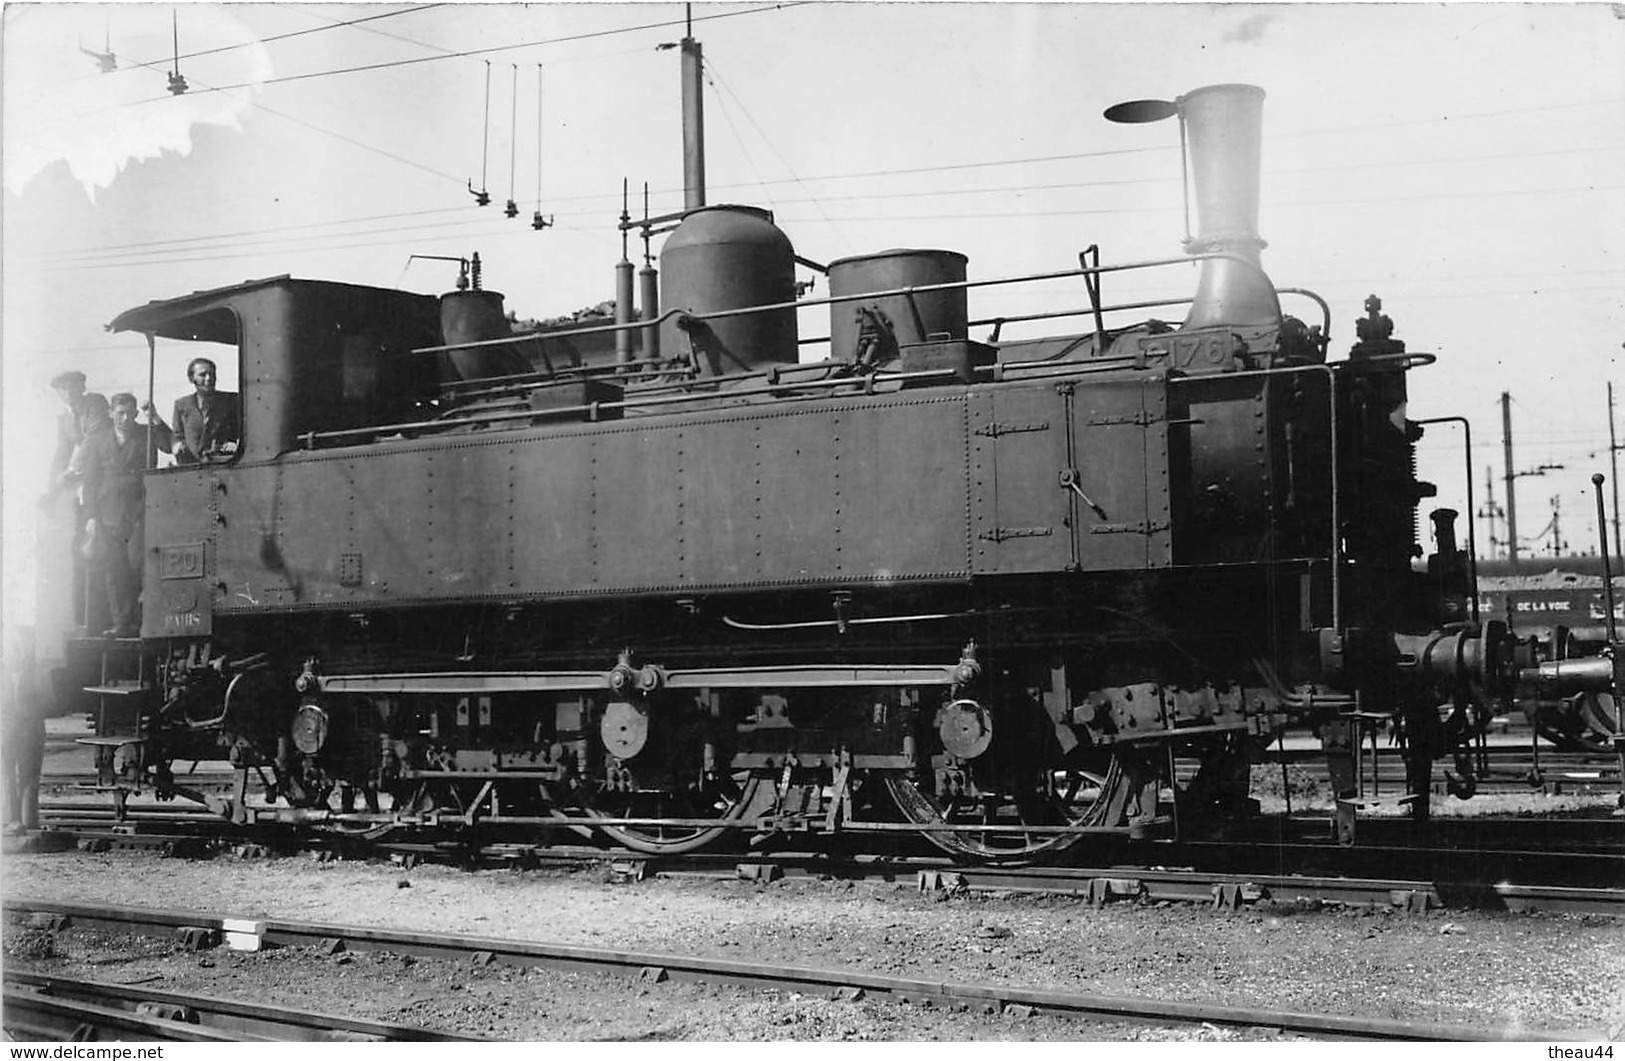 ¤¤  -   Carte-Photo D'une Locomotive   -  Chemins De Fer  -   Machine N° 2176 Du P.O.  -  Train En Gare  -   ¤¤ - Zubehör